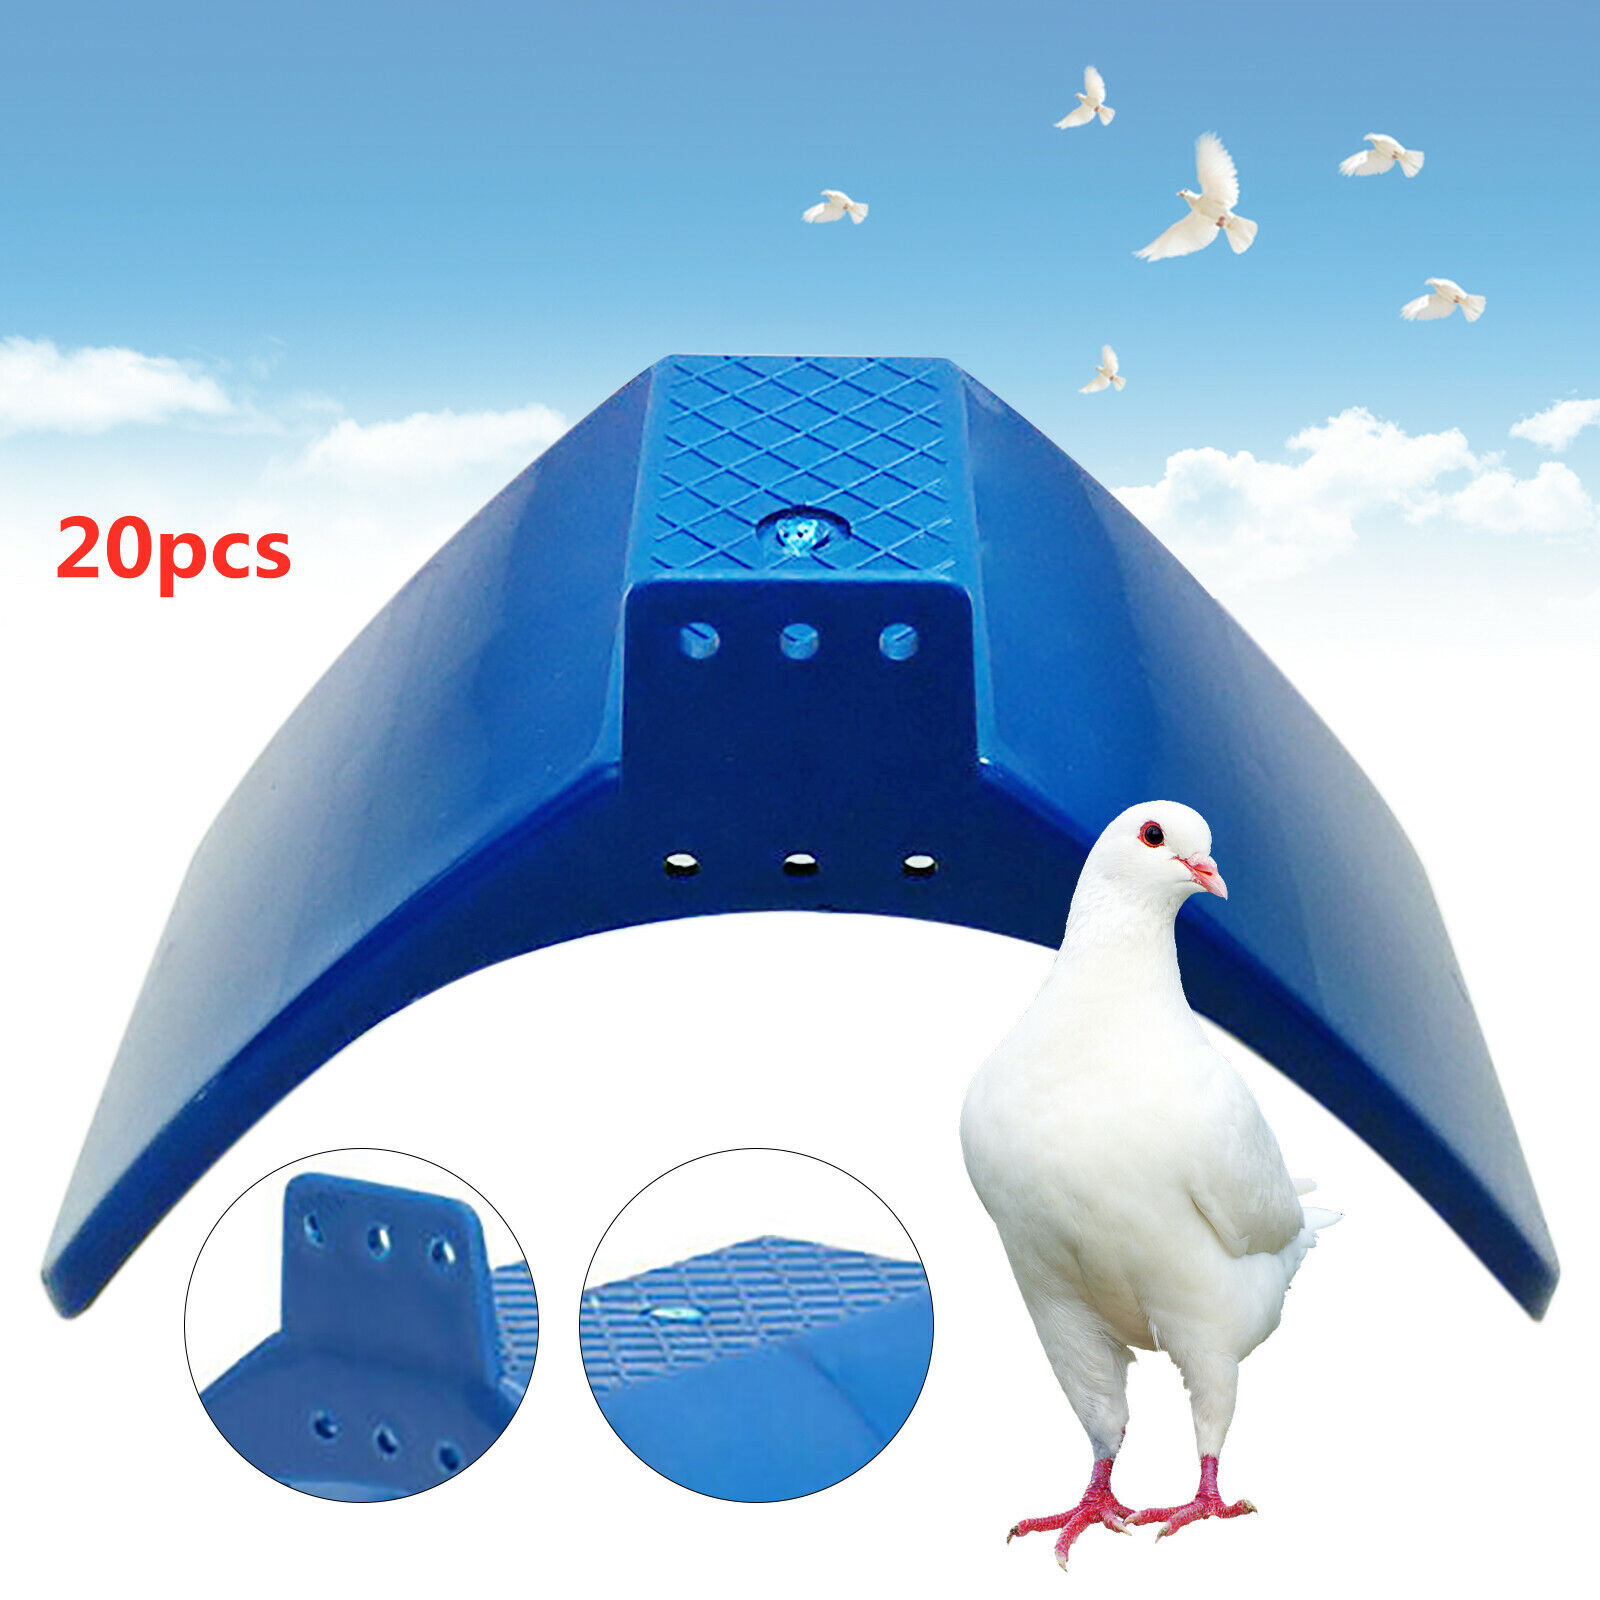 20pcs Pigeon Dove Rest Frame Pet Birds Perches Parrot Rest Arched Stand Blue Unbranded - фотография #7